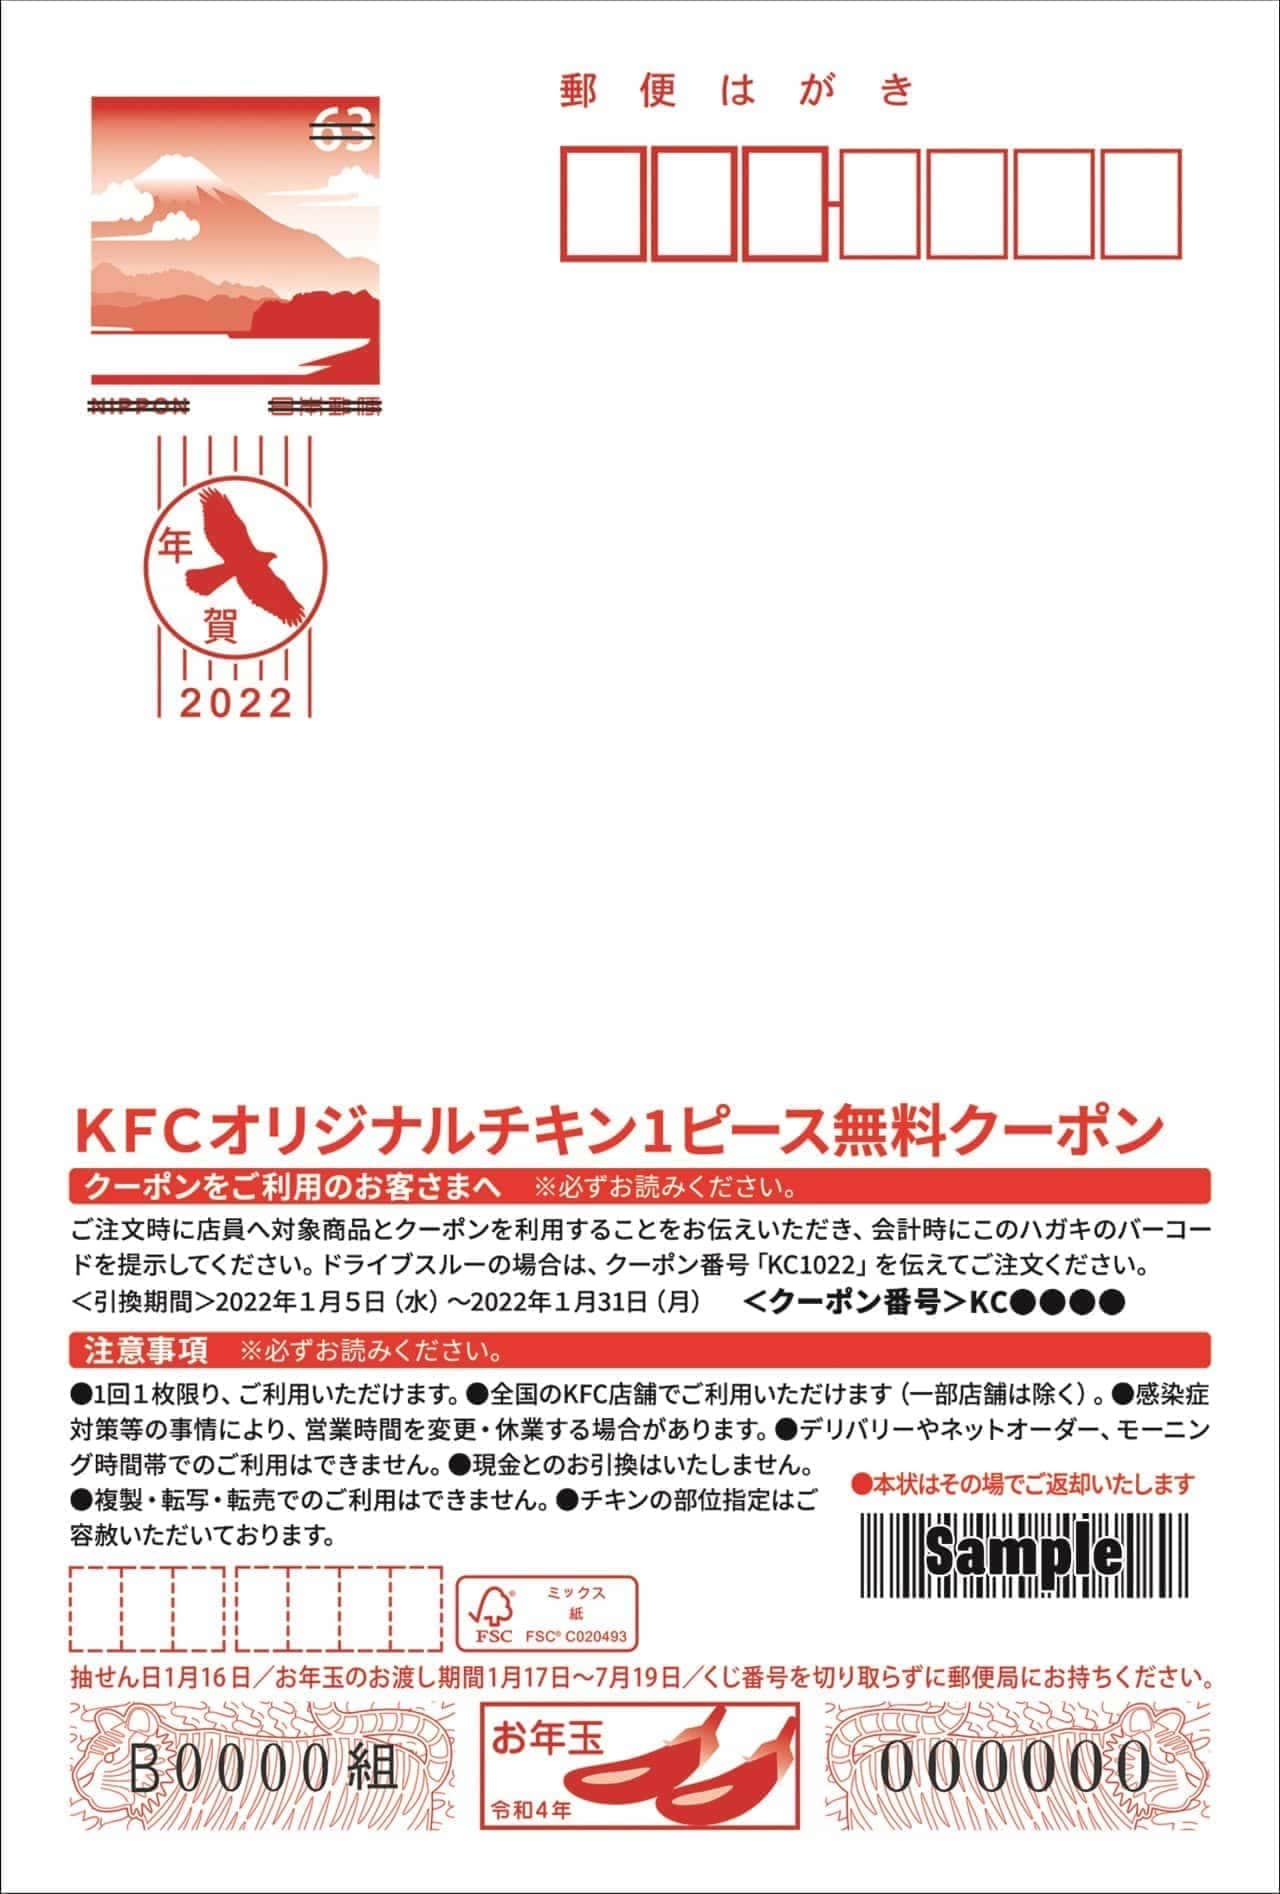 ケンタッキーと日本郵便がコラボした「ギフト付きKFCオリジナル年賀はがき」